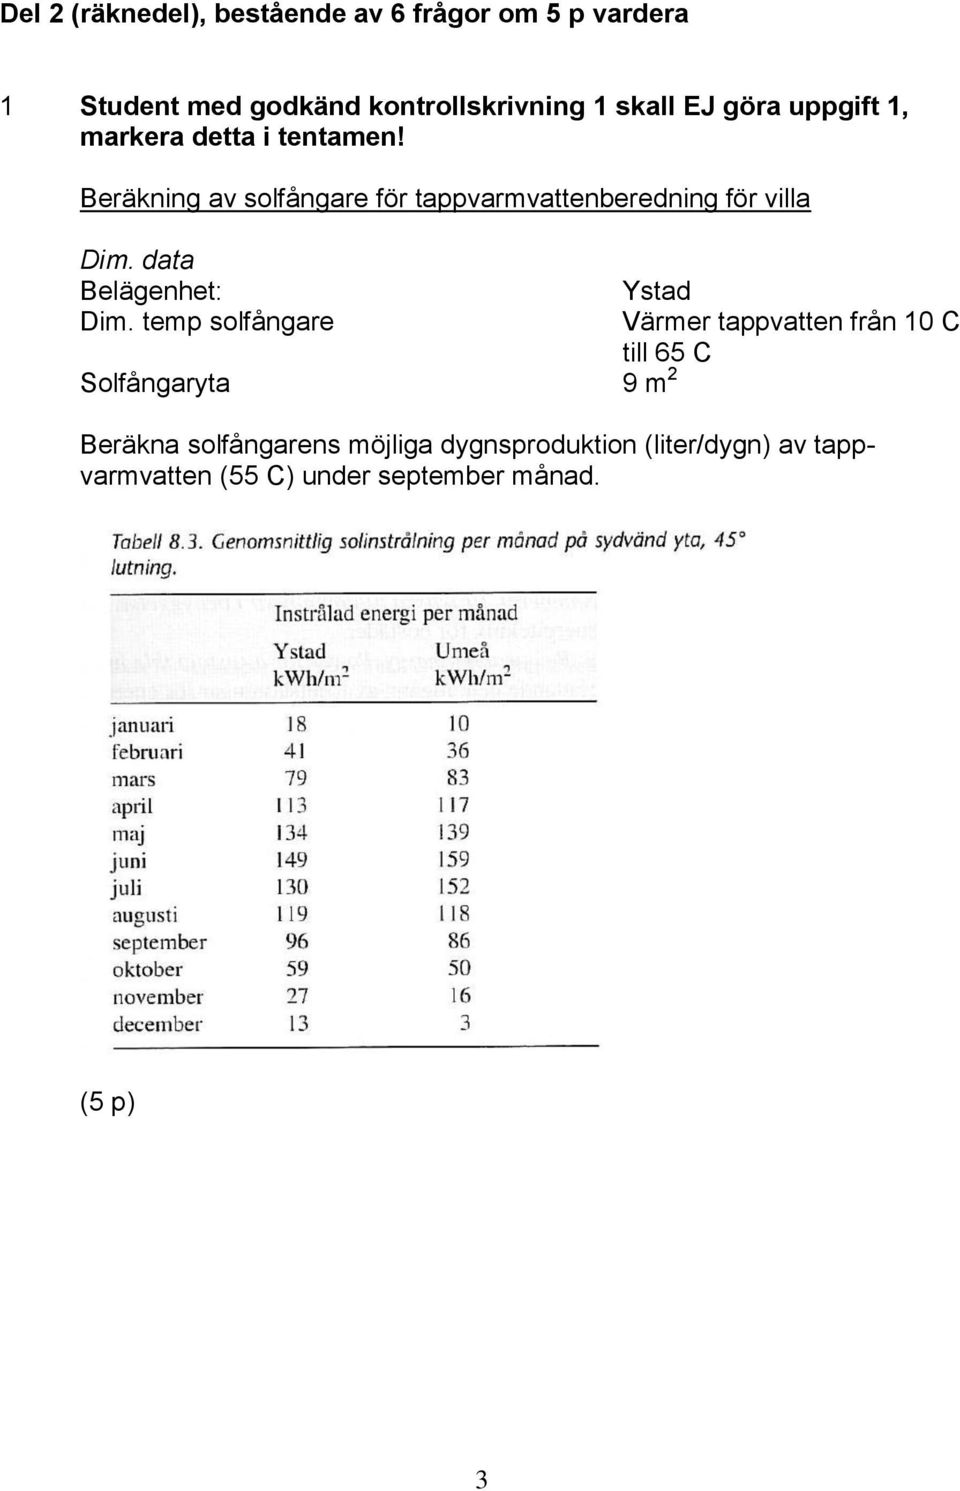 Beräkning av solfångare för tappvarmvattenberedning för villa Belägenhet: Ystad Dim.